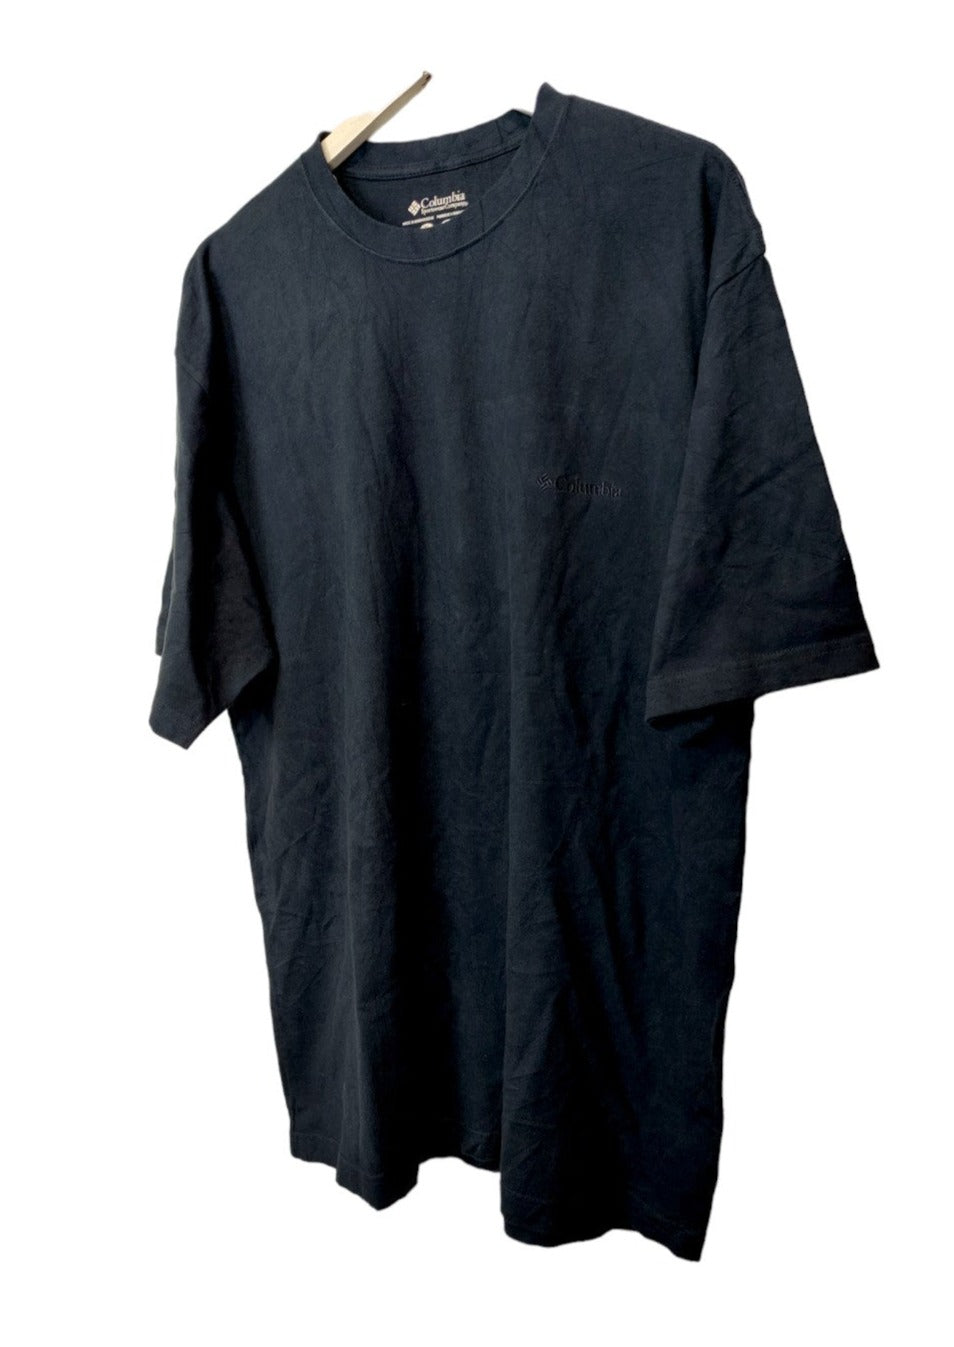 Αθλητική Κοντομάνικη Μπλούζα - T-Shirt COLUMBIA σε Σκούρο Μπλε χρώμα (XL)